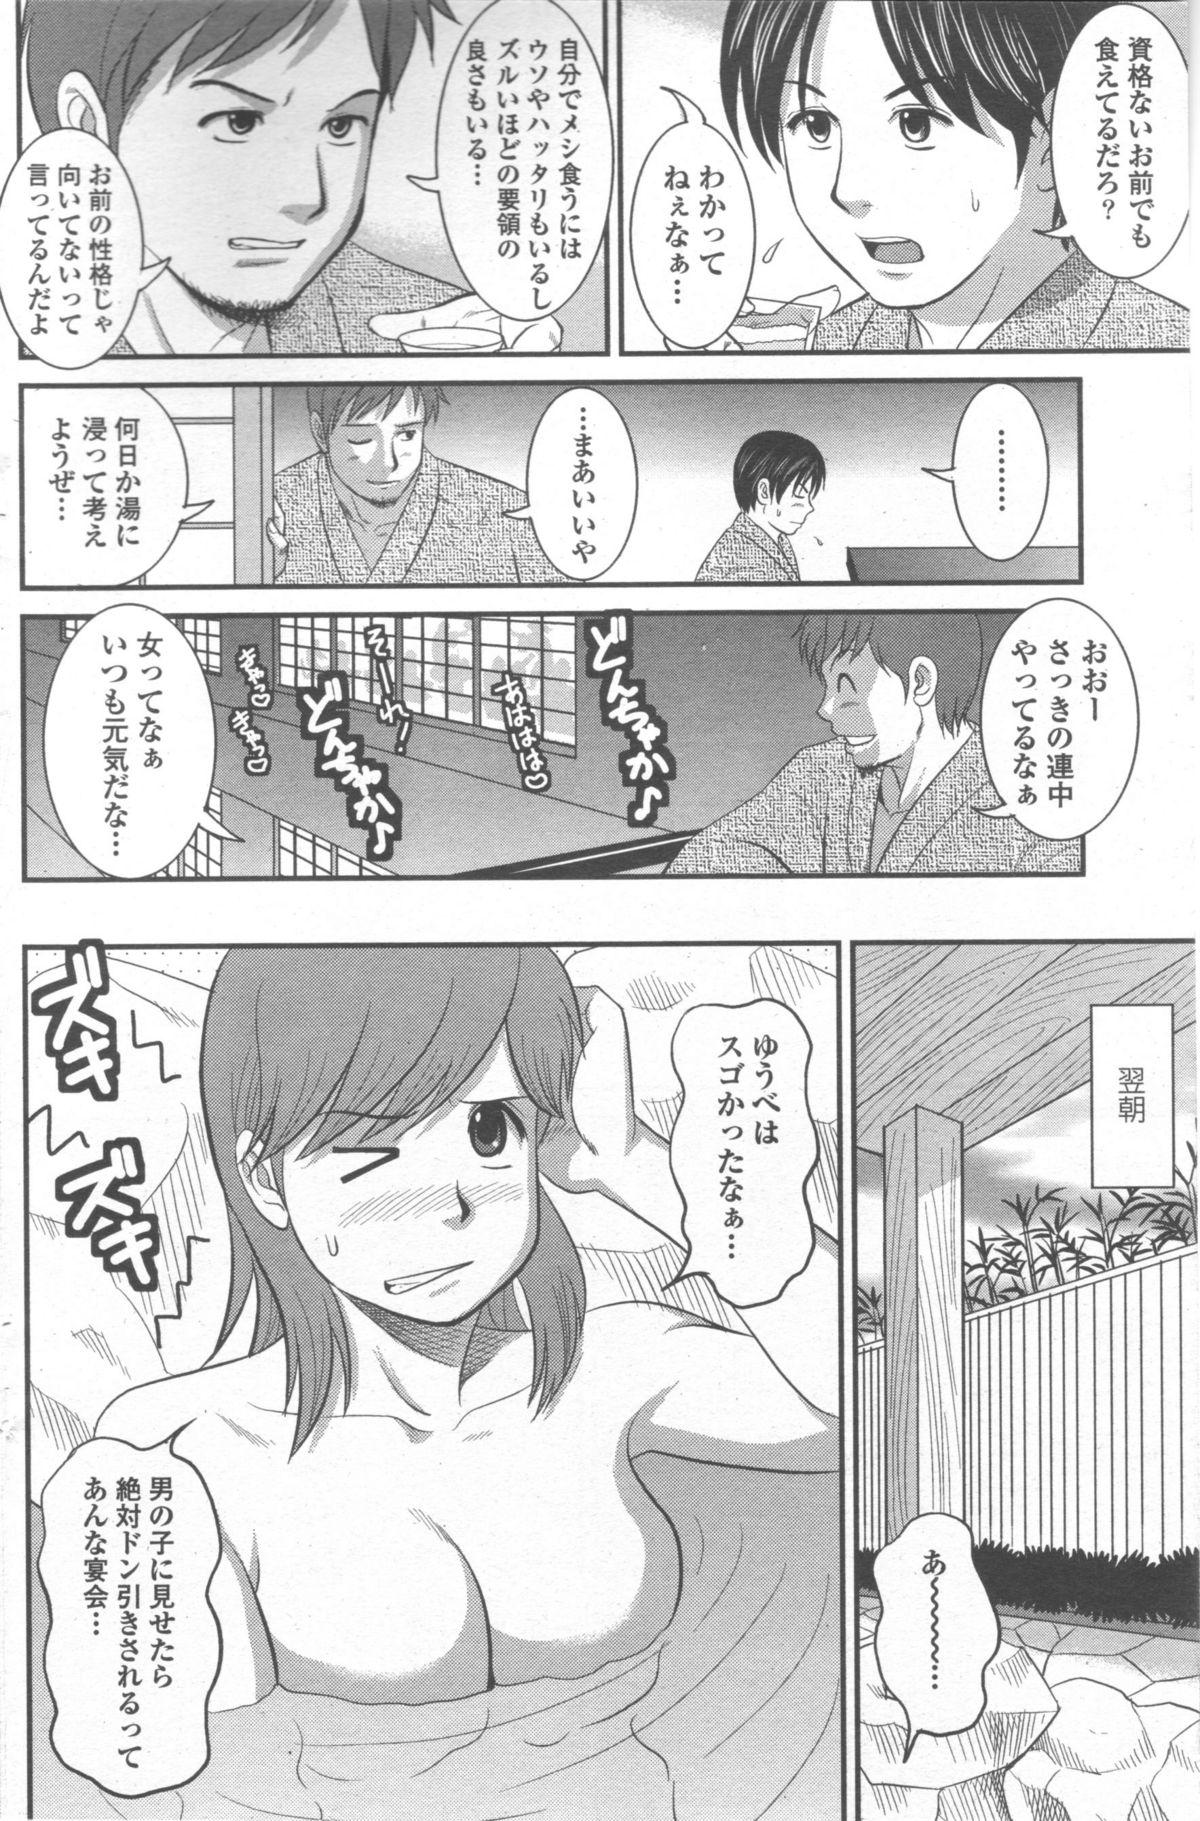 Gostosas Haken no Muuko-san 9 Fucking - Page 7